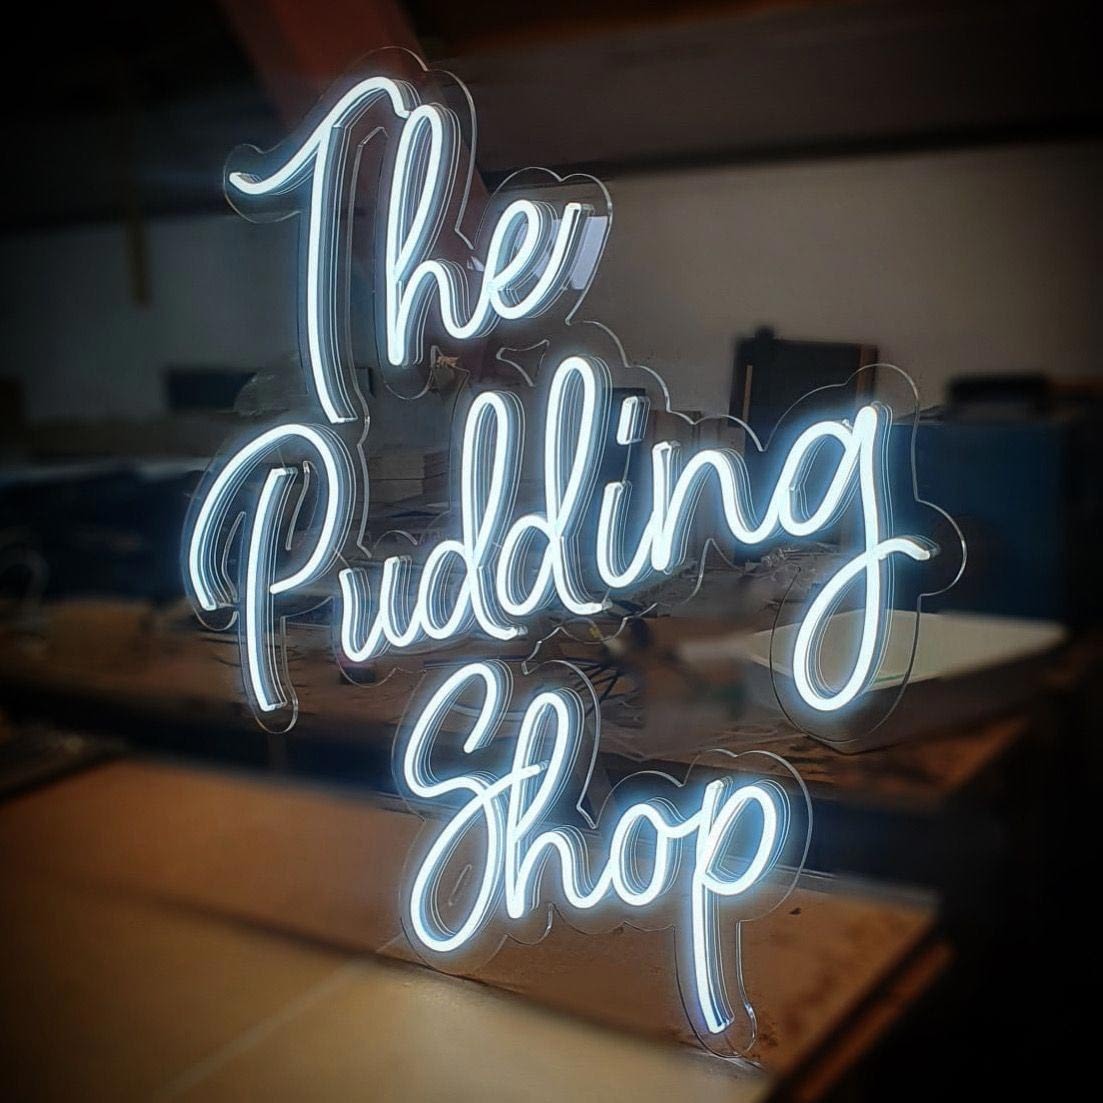 the pudding shop illuminated signage manufacturer hertfordshire